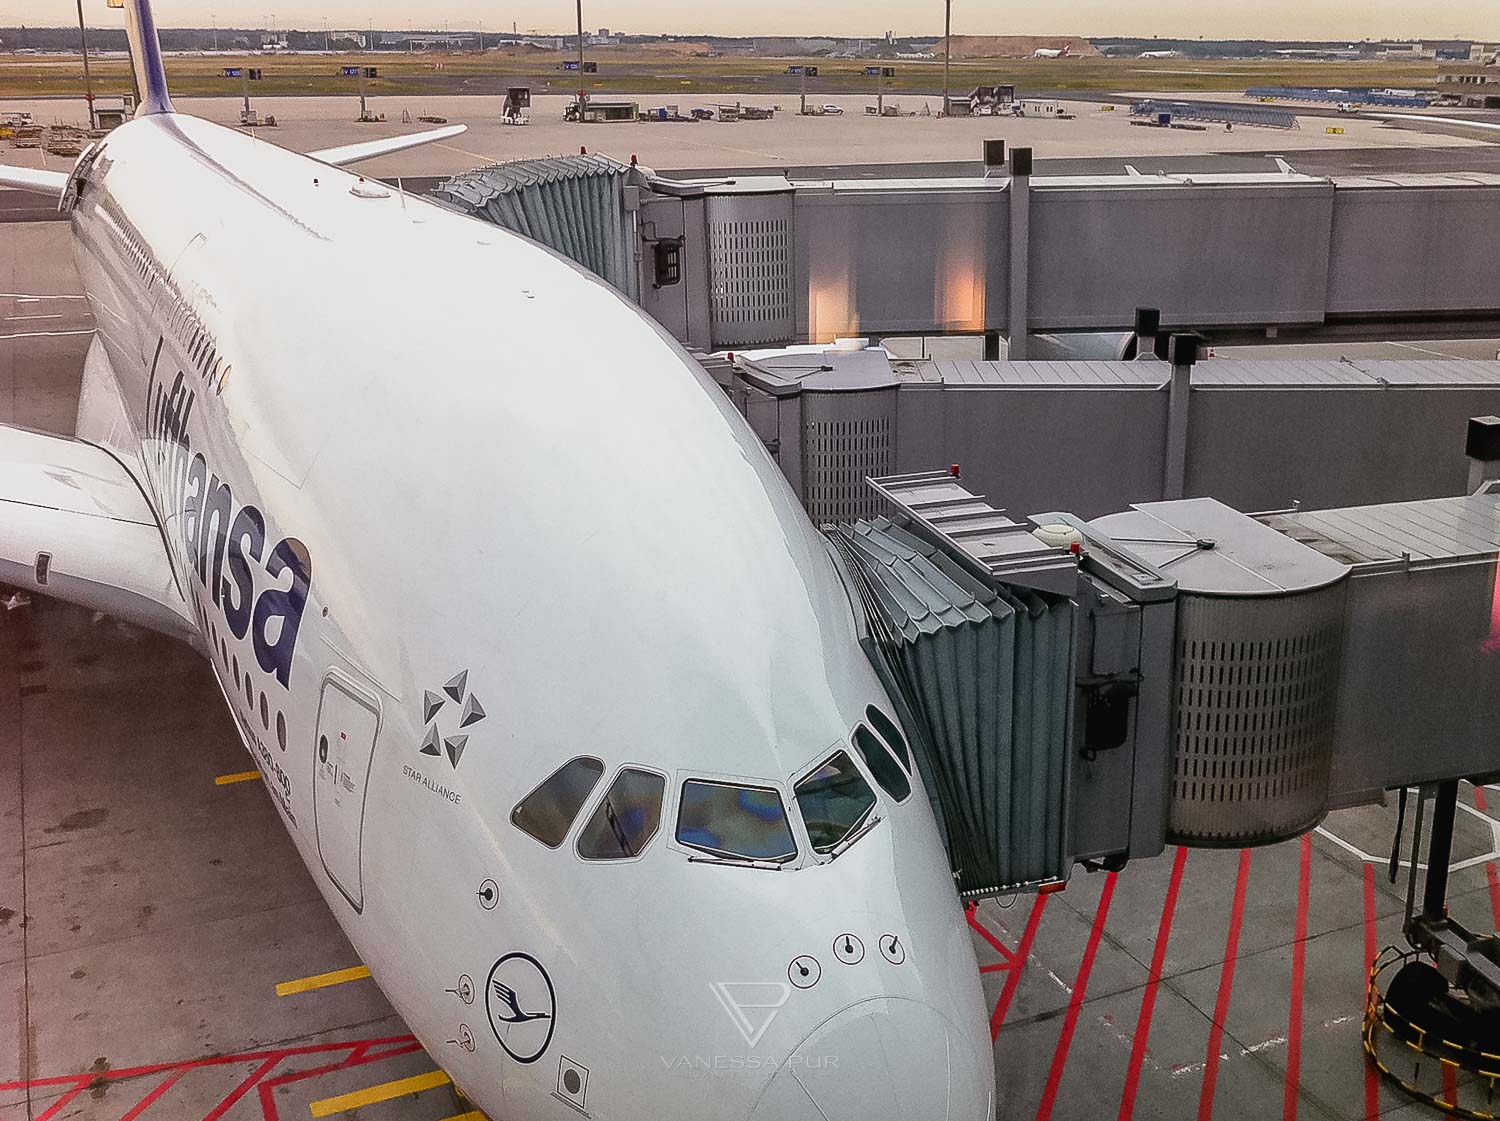 Lufthansa Airbus A380 LH 462 - Einführungsflug - Frankfurt nach Miami - Bericht und Erfahrung über den Einführungsflug LH462 des neuen Lufthansa Airbus A380 von Frankfurt nach Miami in der Business Class Gate C16